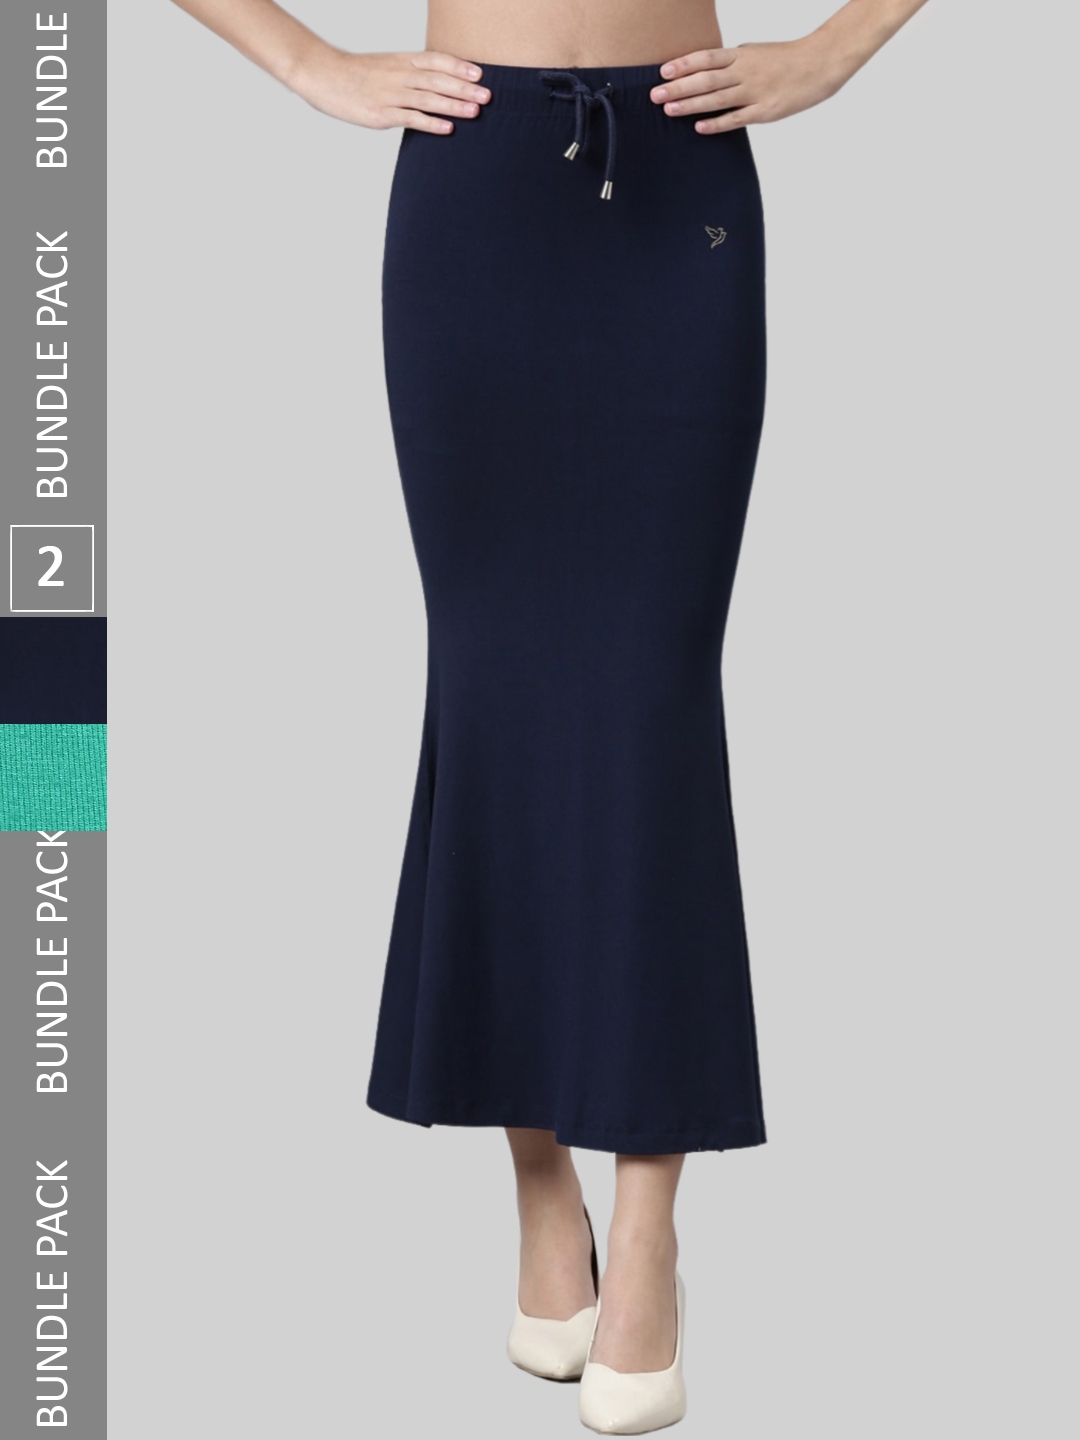 Buy Blue Shapewear for Women by Twin Birds Online